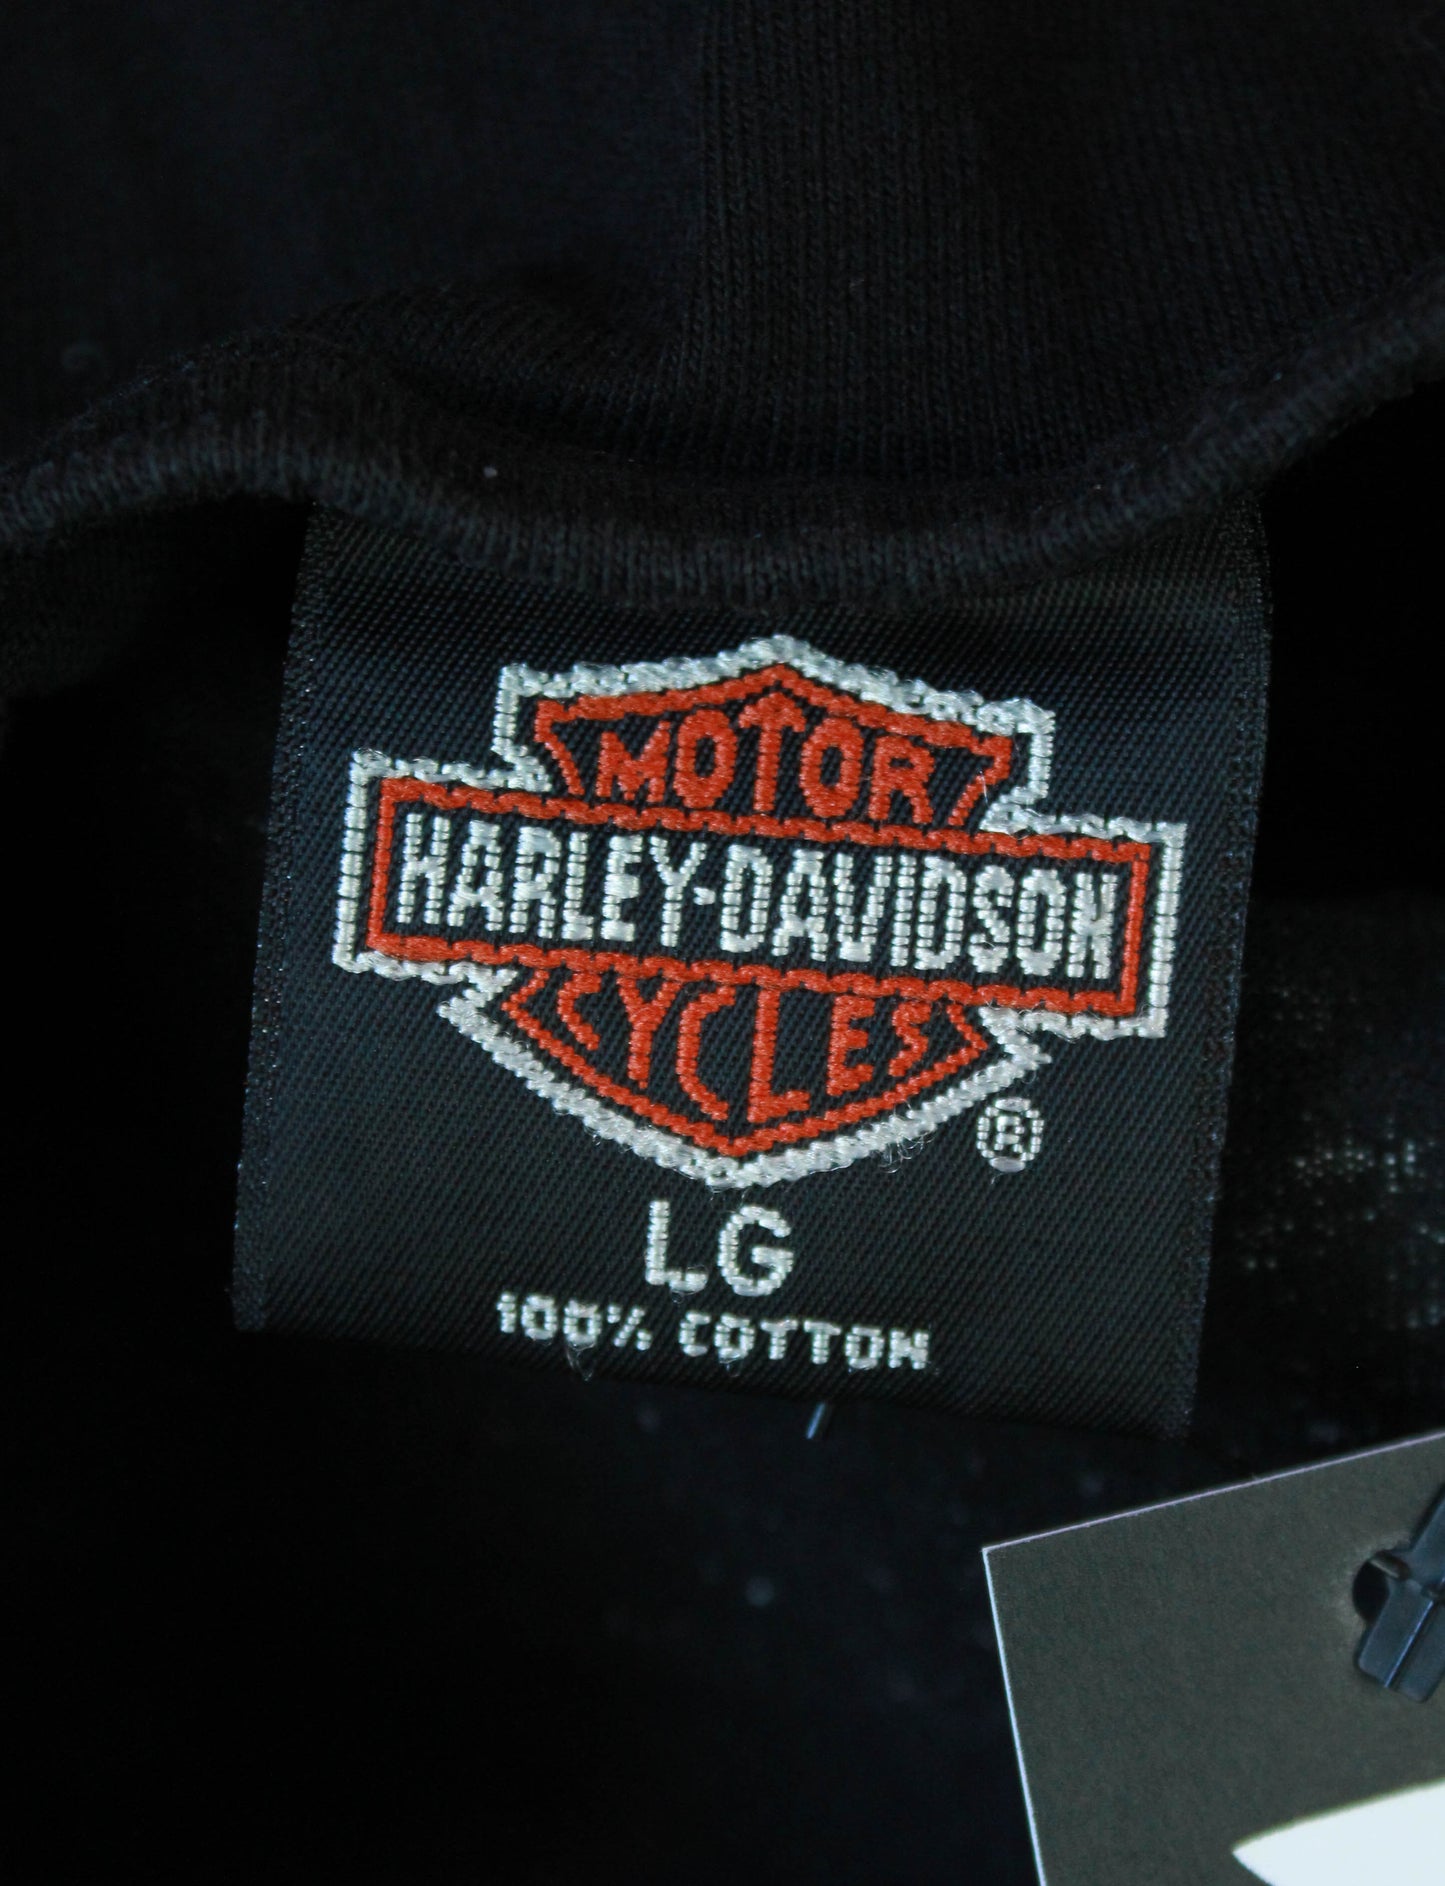 Vintage 1990 Harley Davidson Racing Tank Top - Large